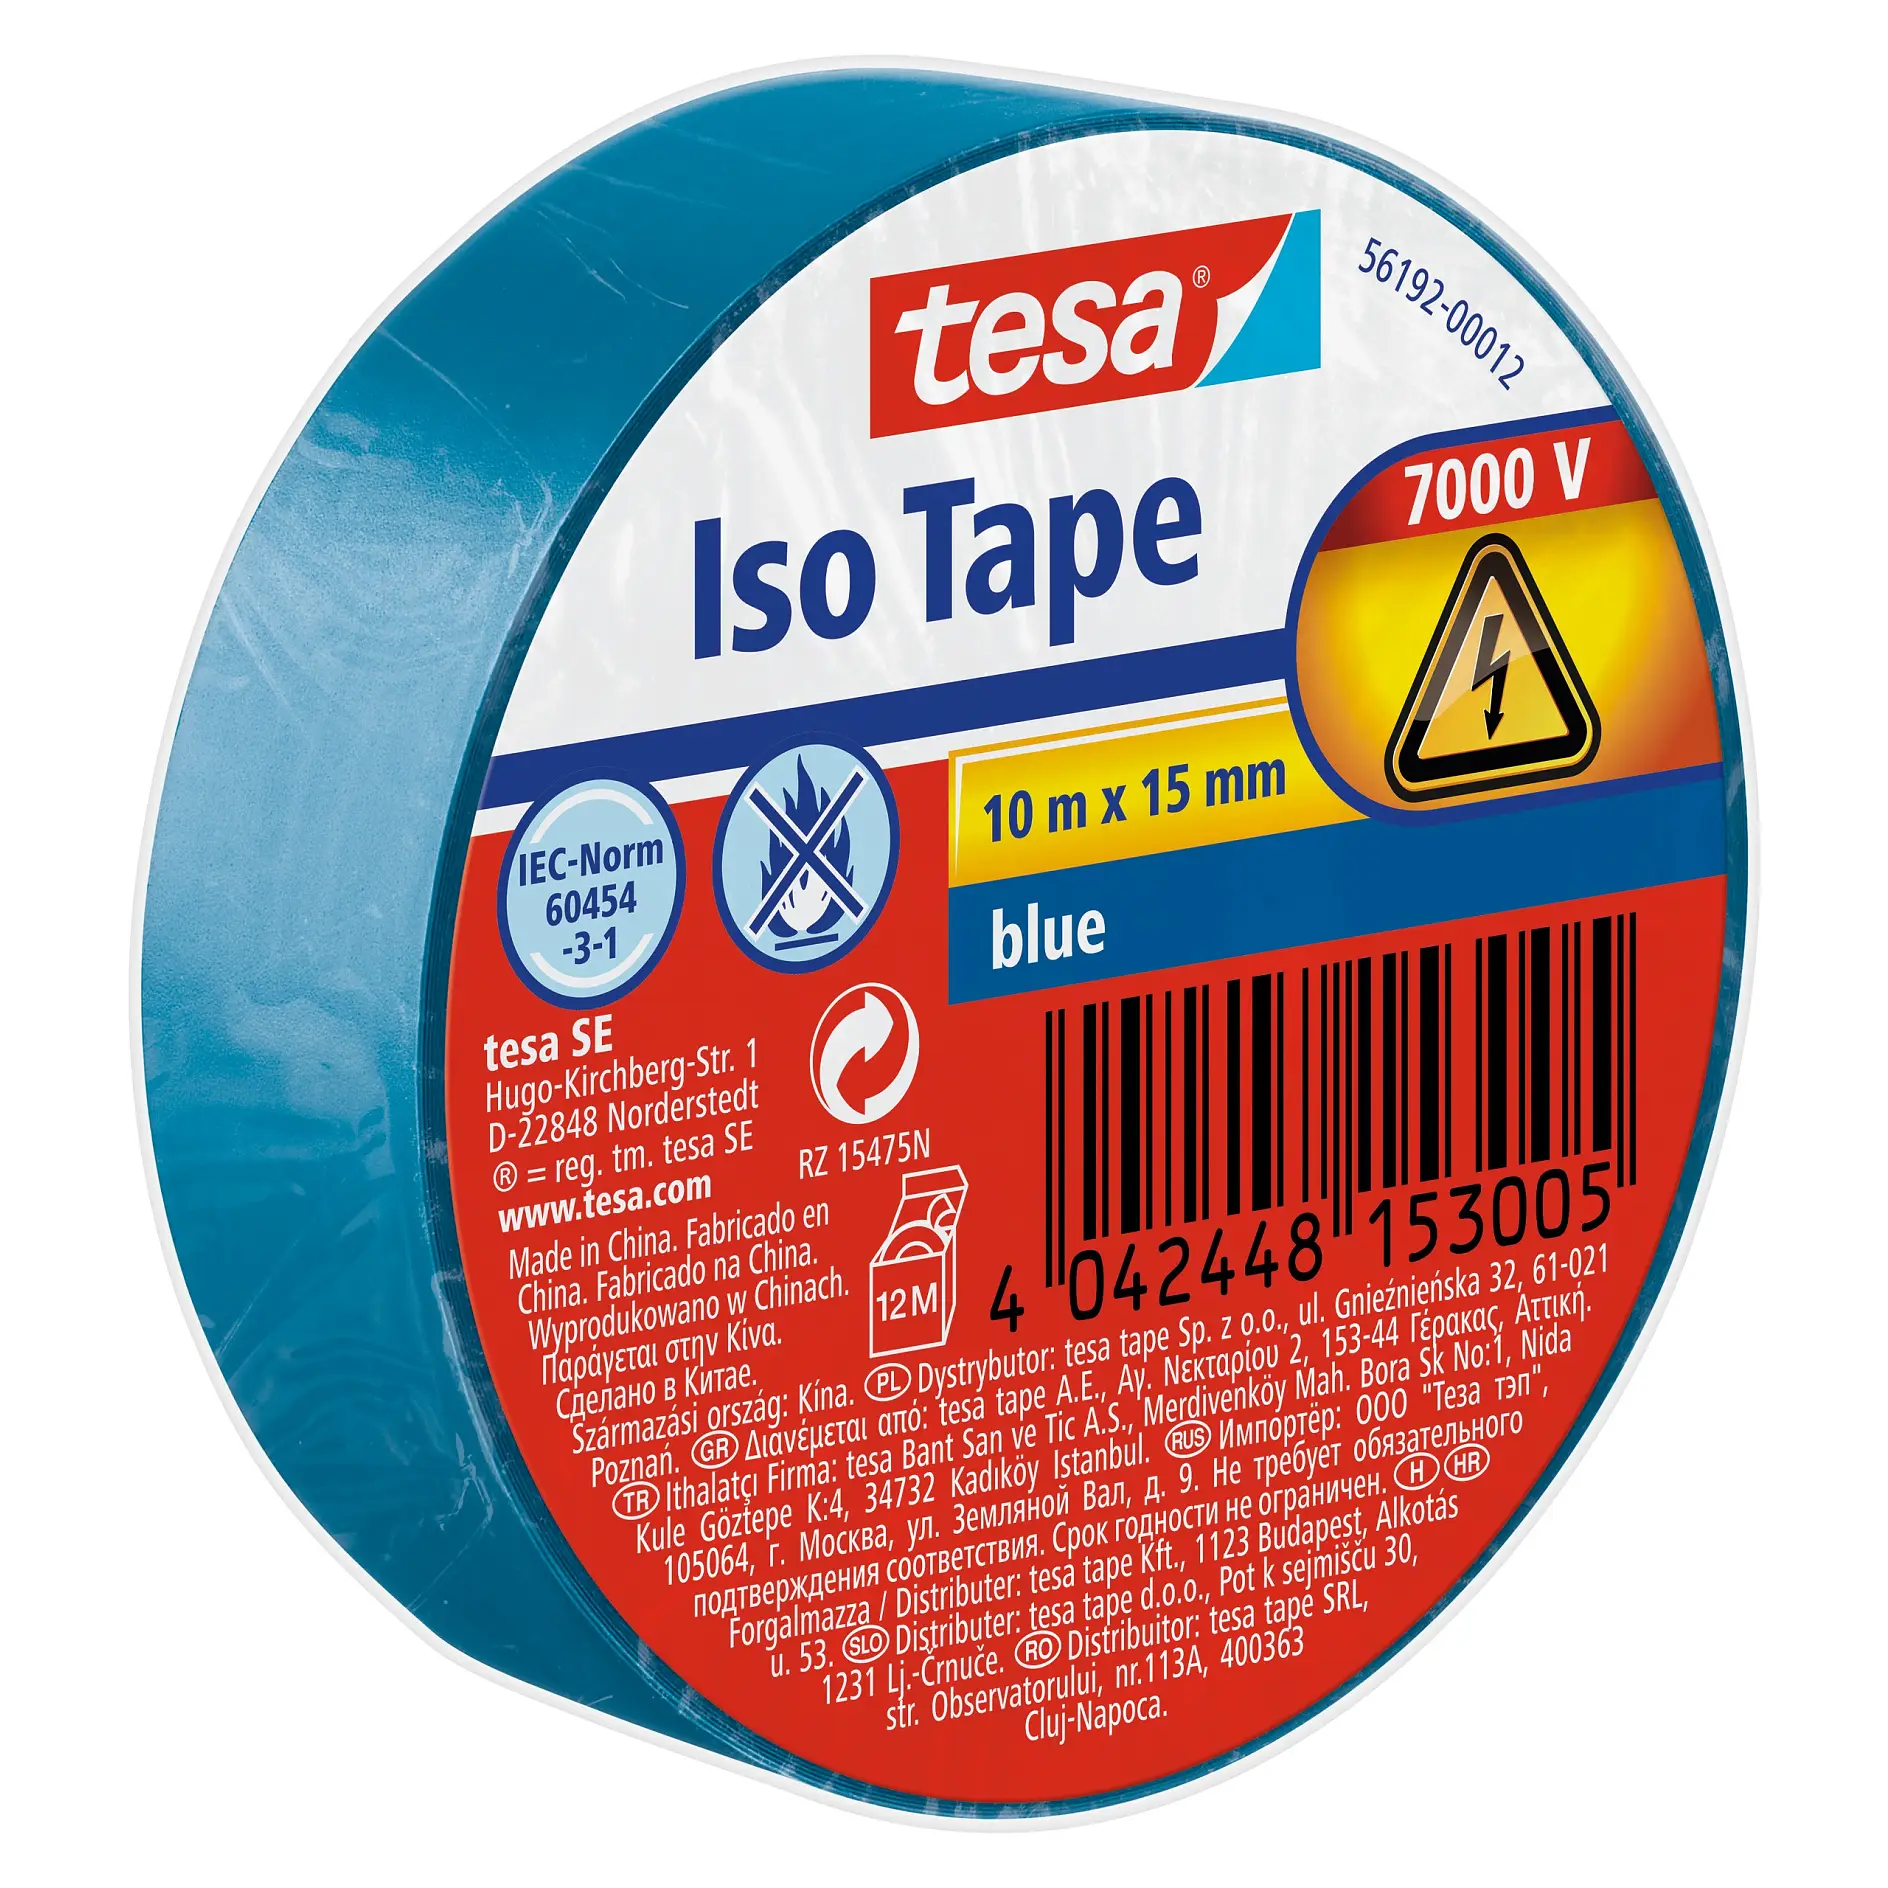 [en-en] tesa Iso Tape, 10m x 15mm, blue